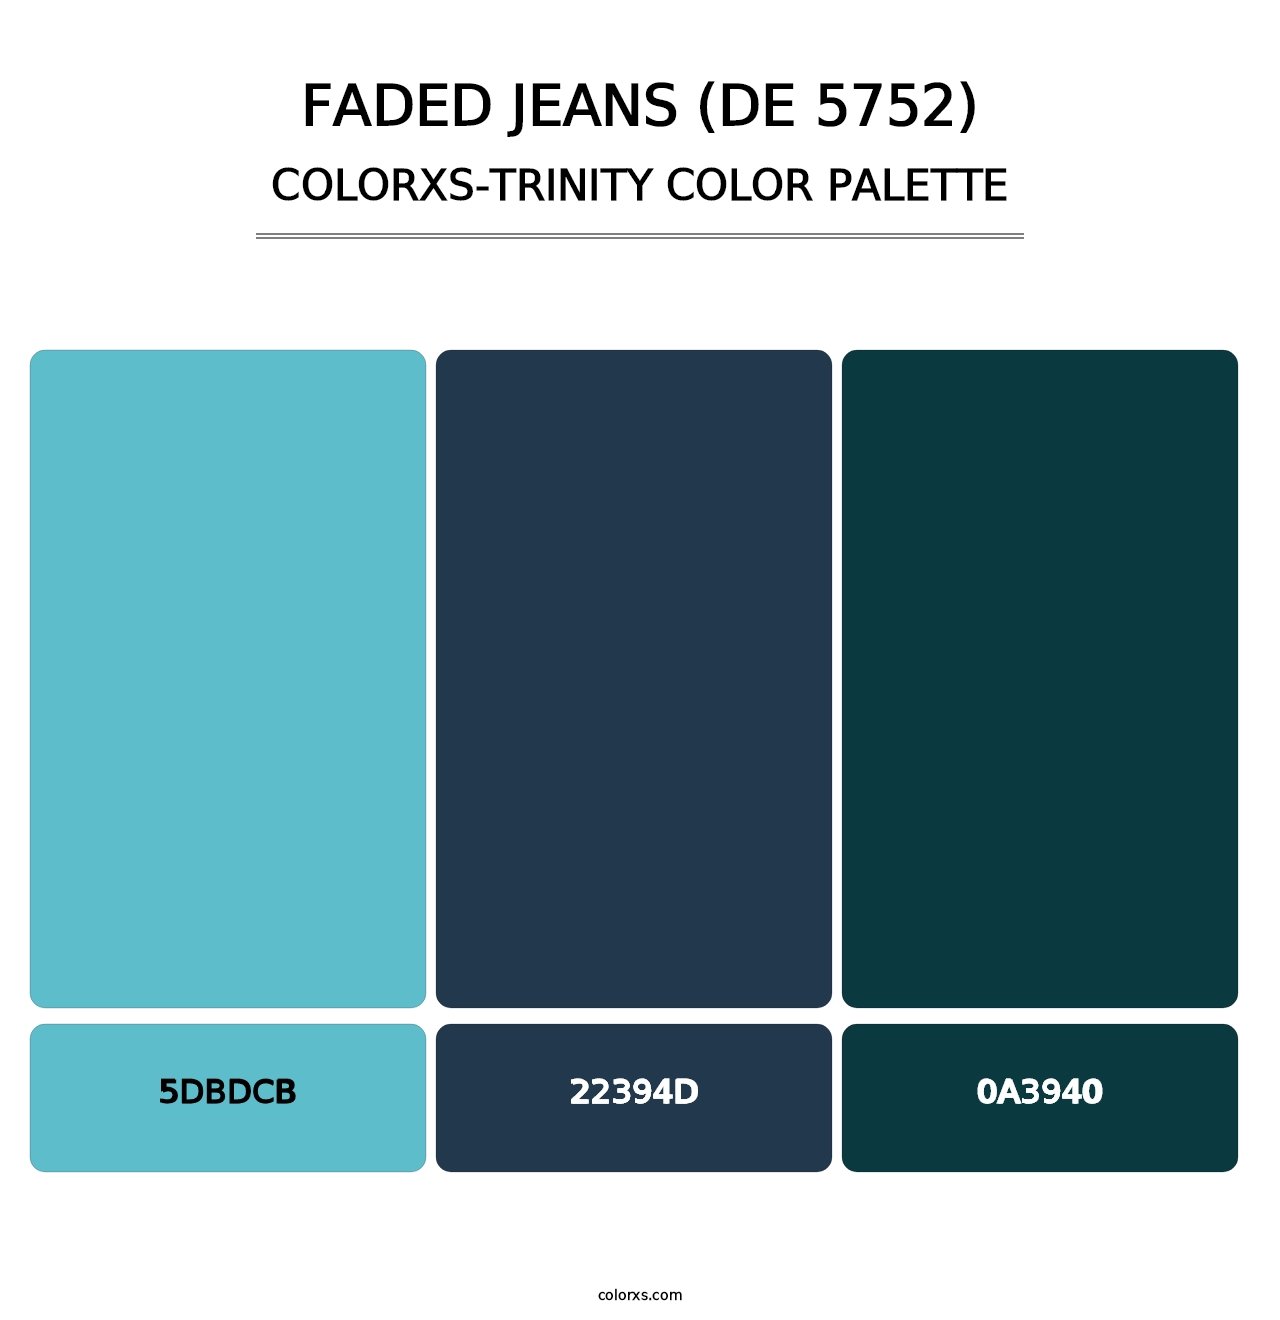 Faded Jeans (DE 5752) - Colorxs Trinity Palette